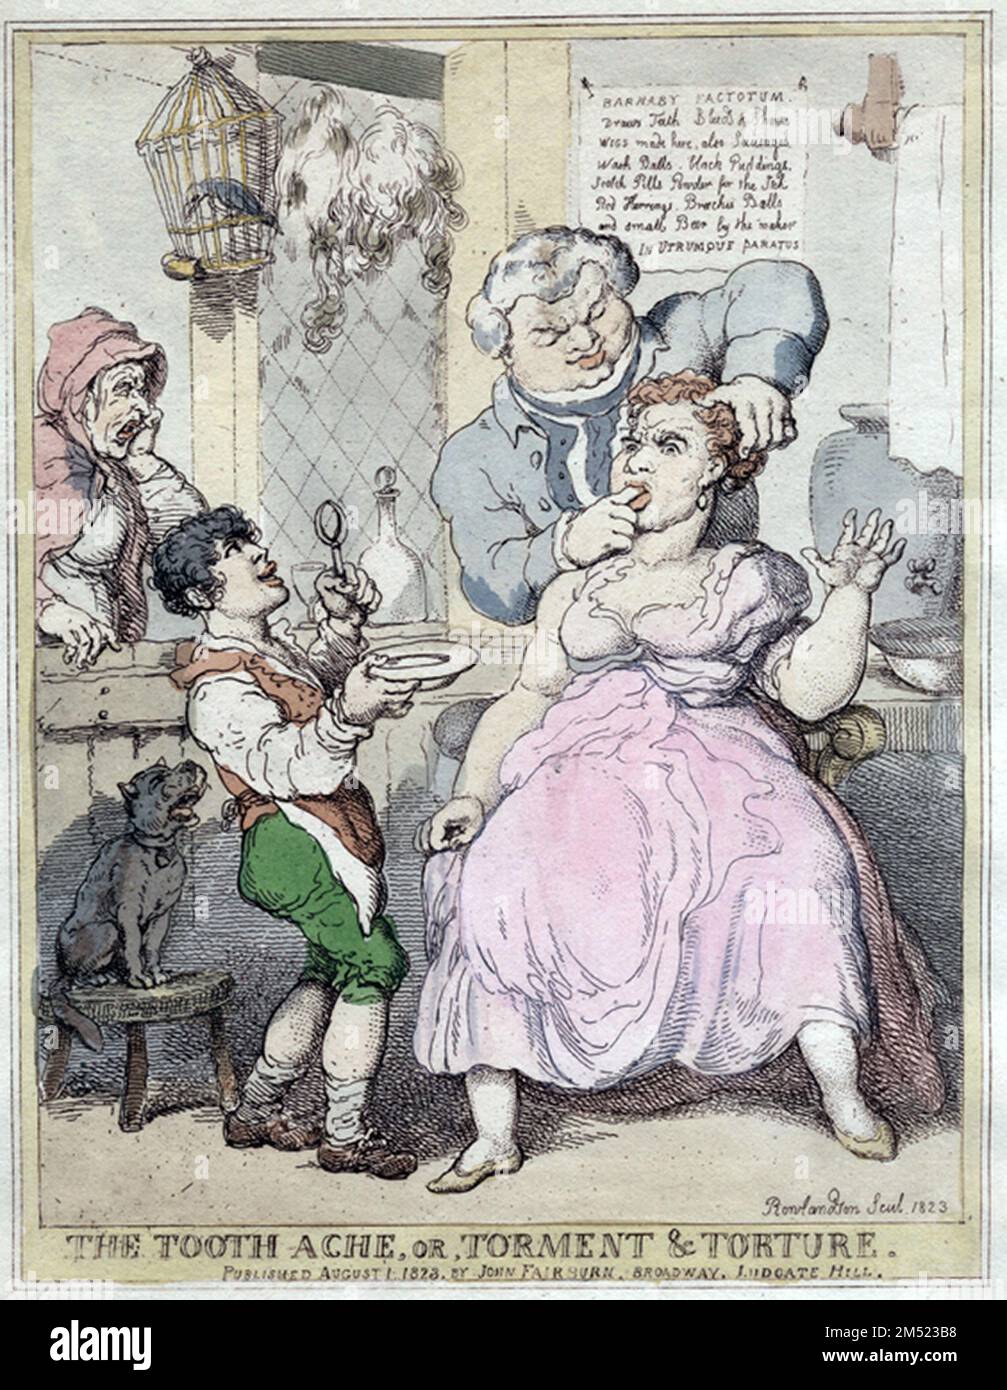 Thomas Rowlandson commente la dentisterie dans cette gravure, suggérant que le traitement dans les jours précédant l'anesthésie était aussi douloureux que la maladie. 1823 Banque D'Images